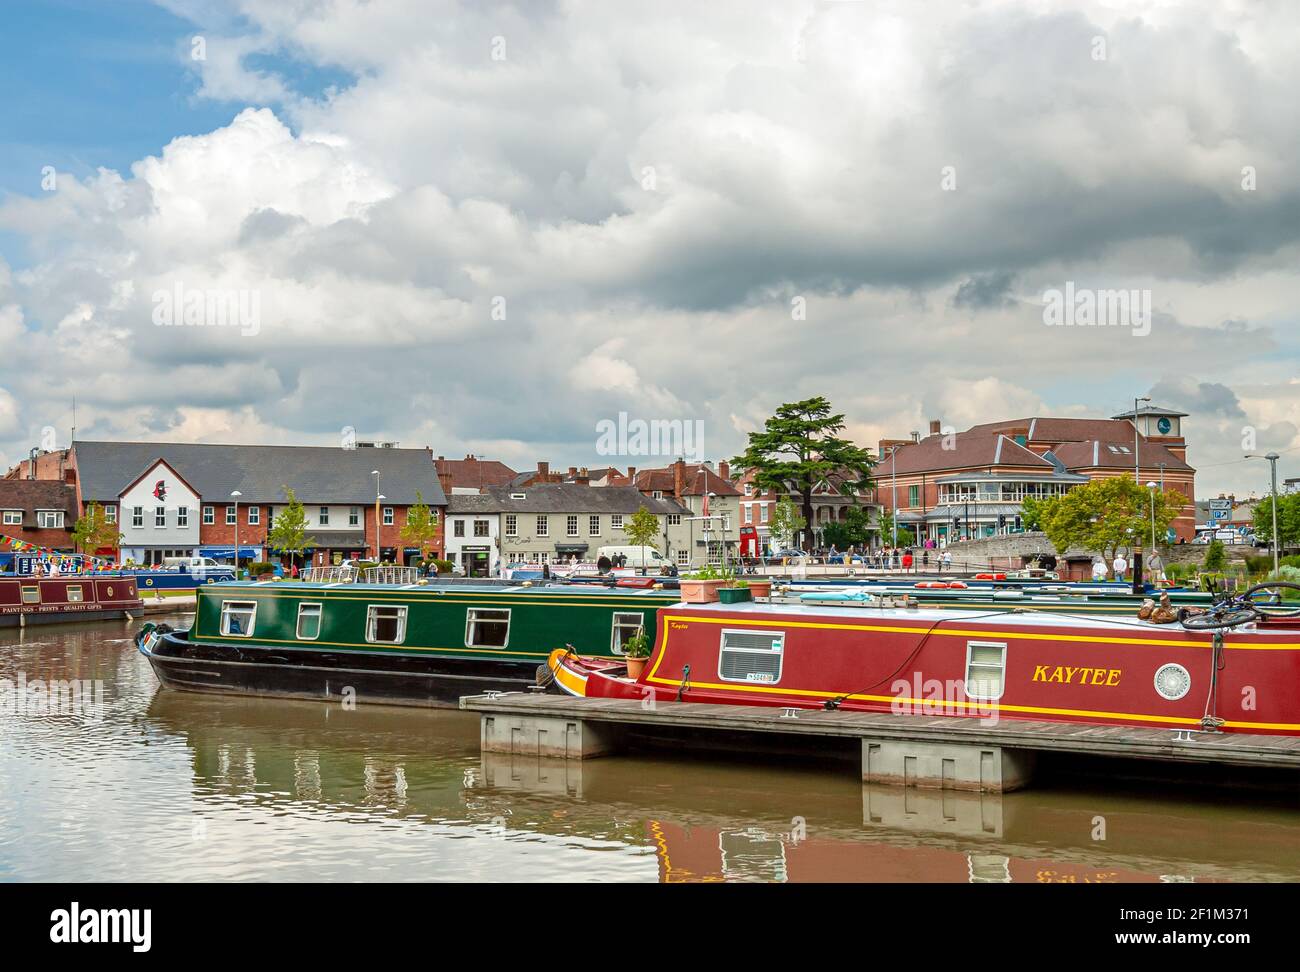 Narrow boat Marina auf dem Fluss Avon im Stadtzentrum von Stratford-upon-Avon, Warwickshire, England, Großbritannien Stockfoto